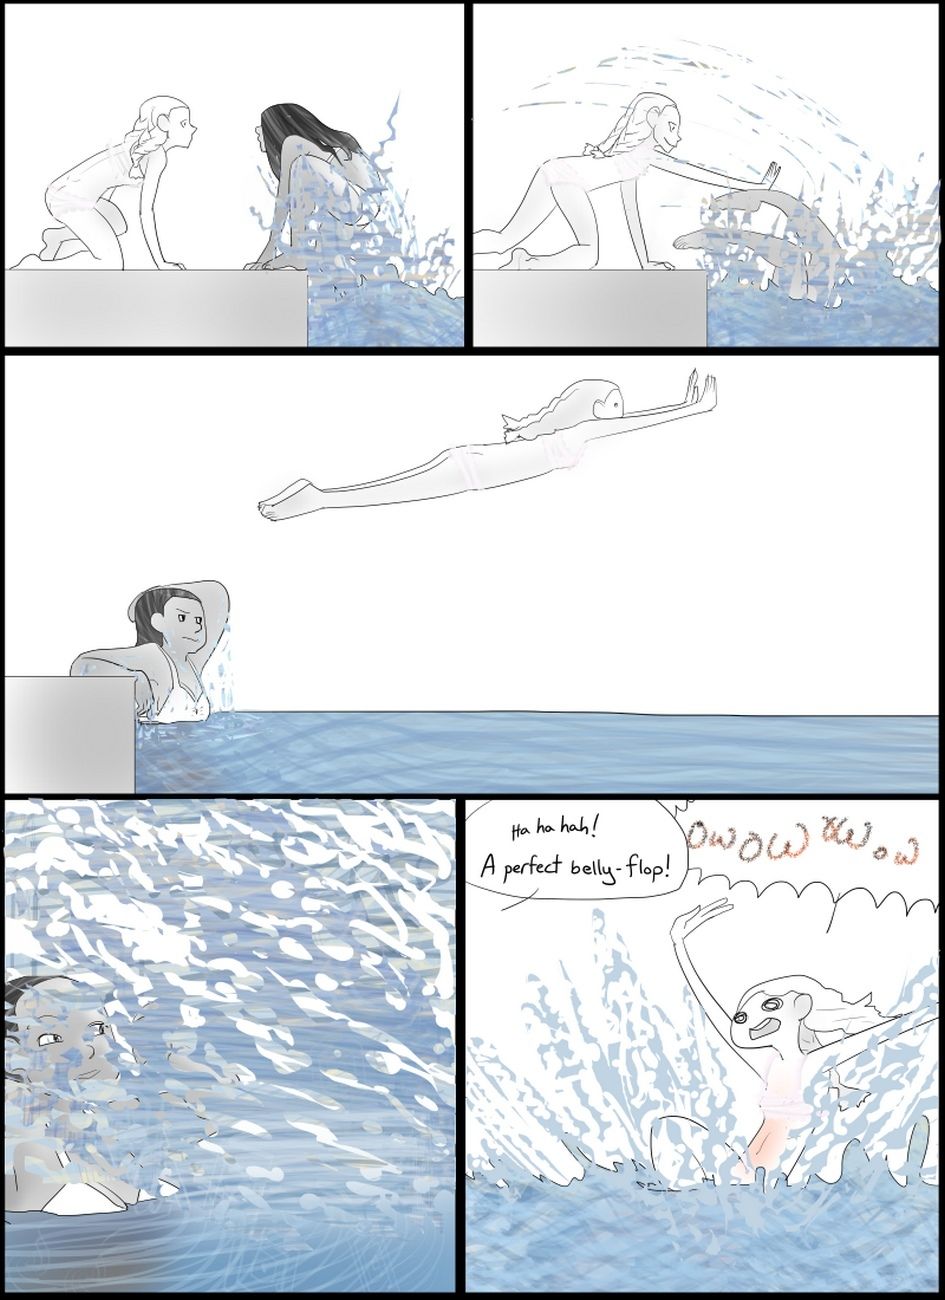 scrub immersioni subacquee 5 un lungo notte parte 2 page 1